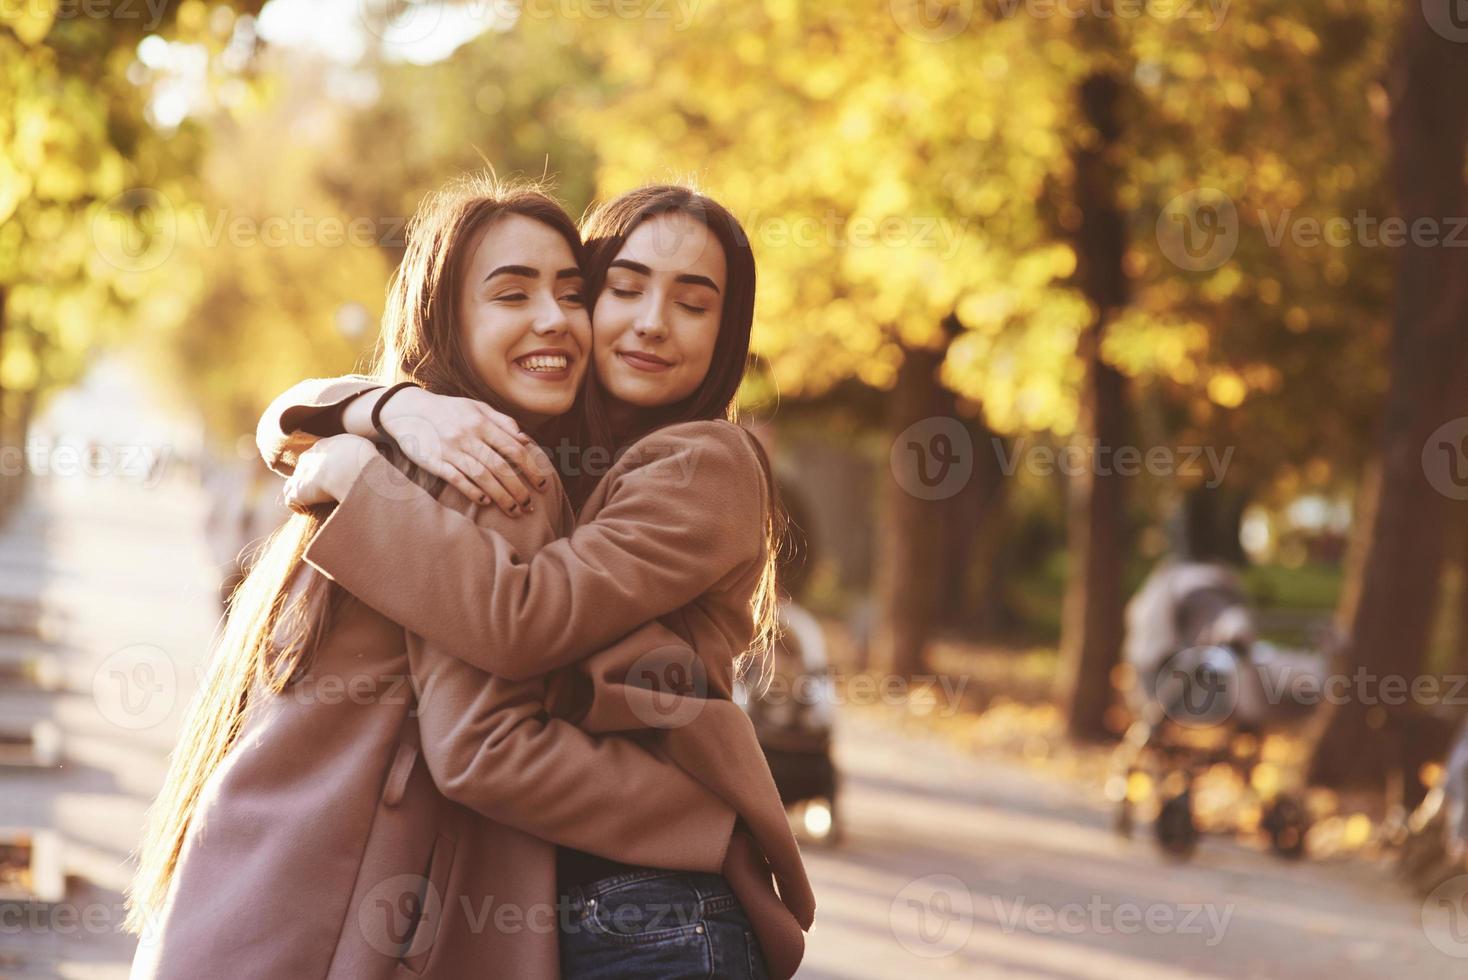 zijprofiel van jonge glimlachende brunette tweelingmeisjes die knuffelen en plezier hebben in een casual jas die dicht bij elkaar staat in de herfst zonnig parksteegje op onscherpe achtergrond foto